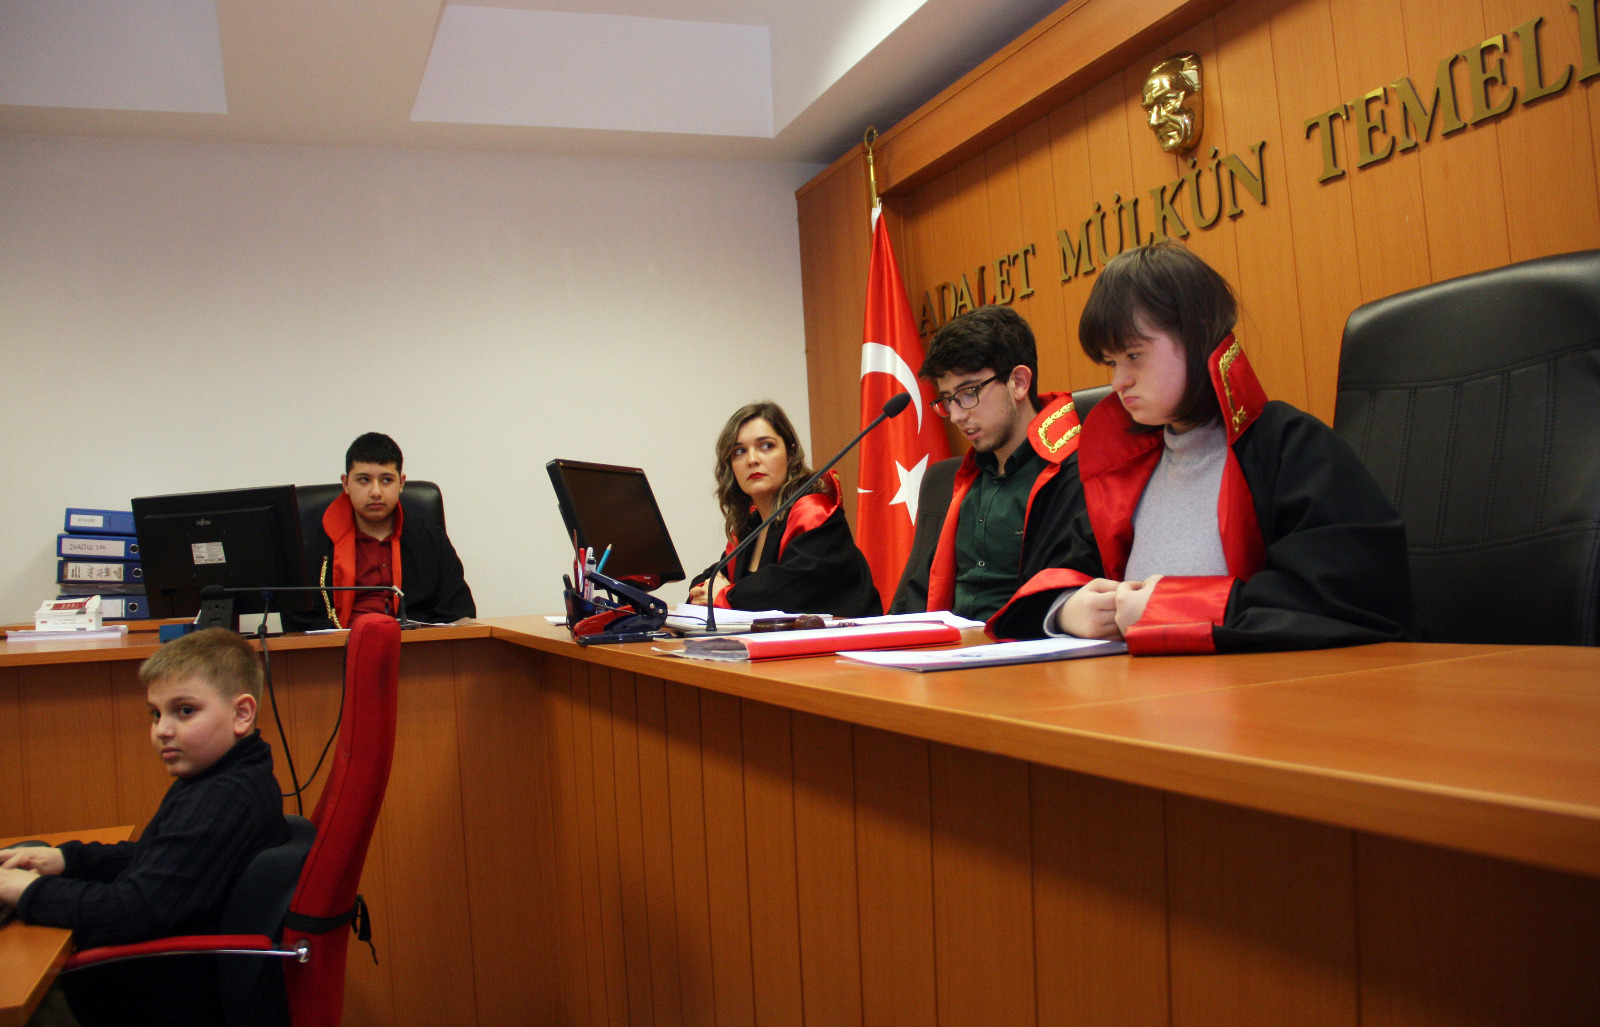 Zonguldak’ta “özel çocuklar” temsili mahkeme heyeti oldu